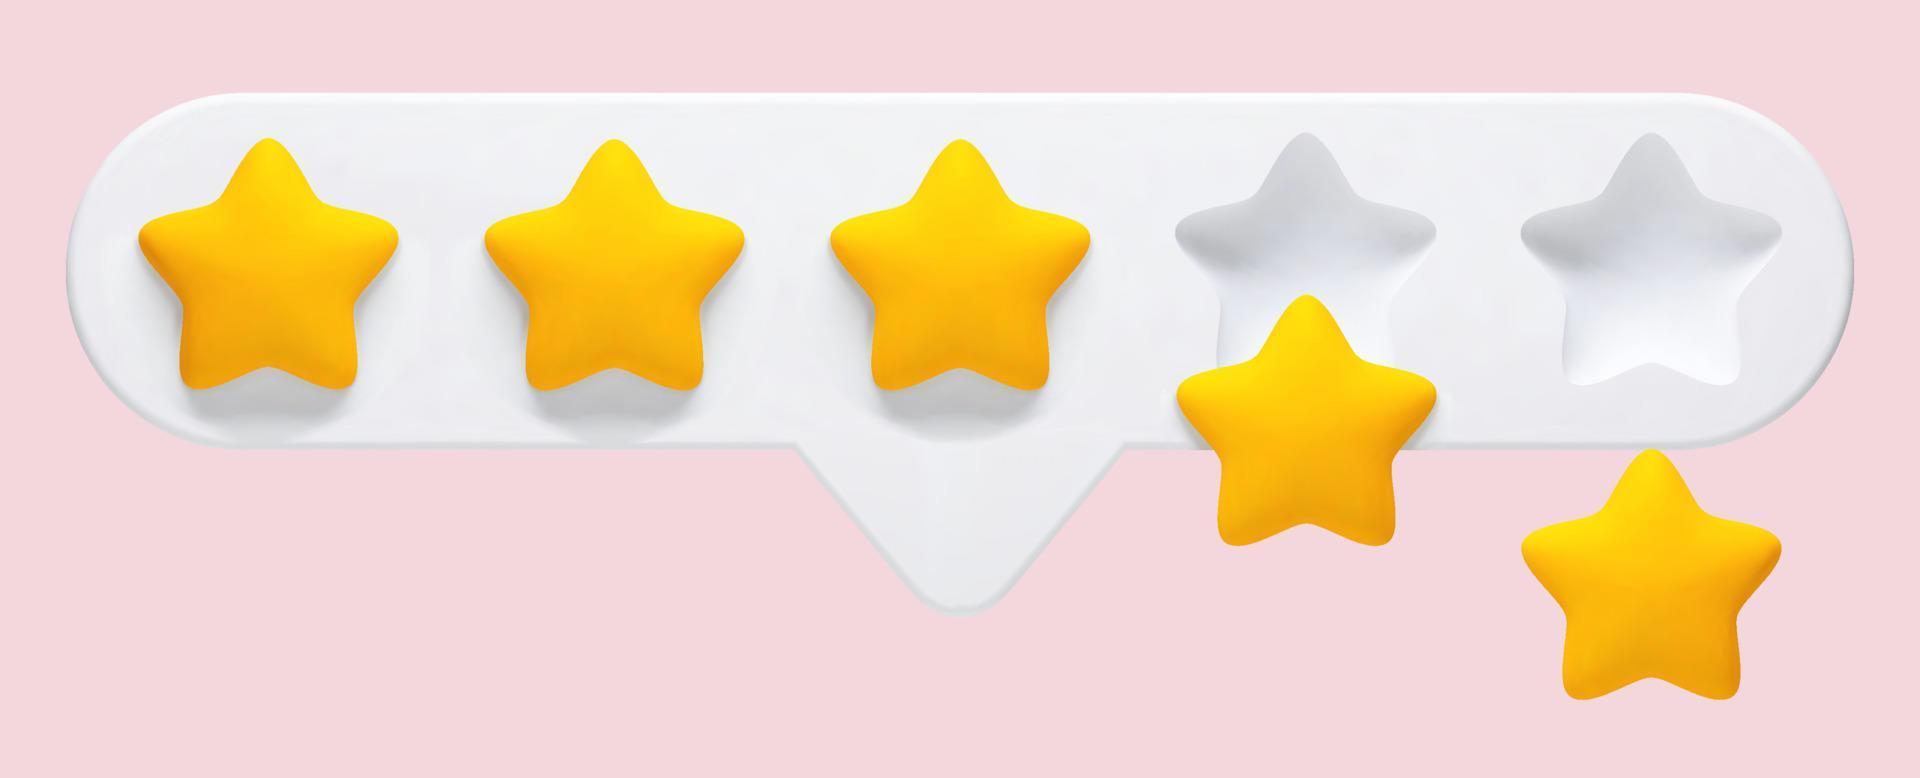 vektor 3d realistische illustration von 5-sternen-feedback, bewertung eines produkts oder einer dienstleistung auf einem rosa hintergrund. zwei Sterne fallen von der Anzeigetafel.